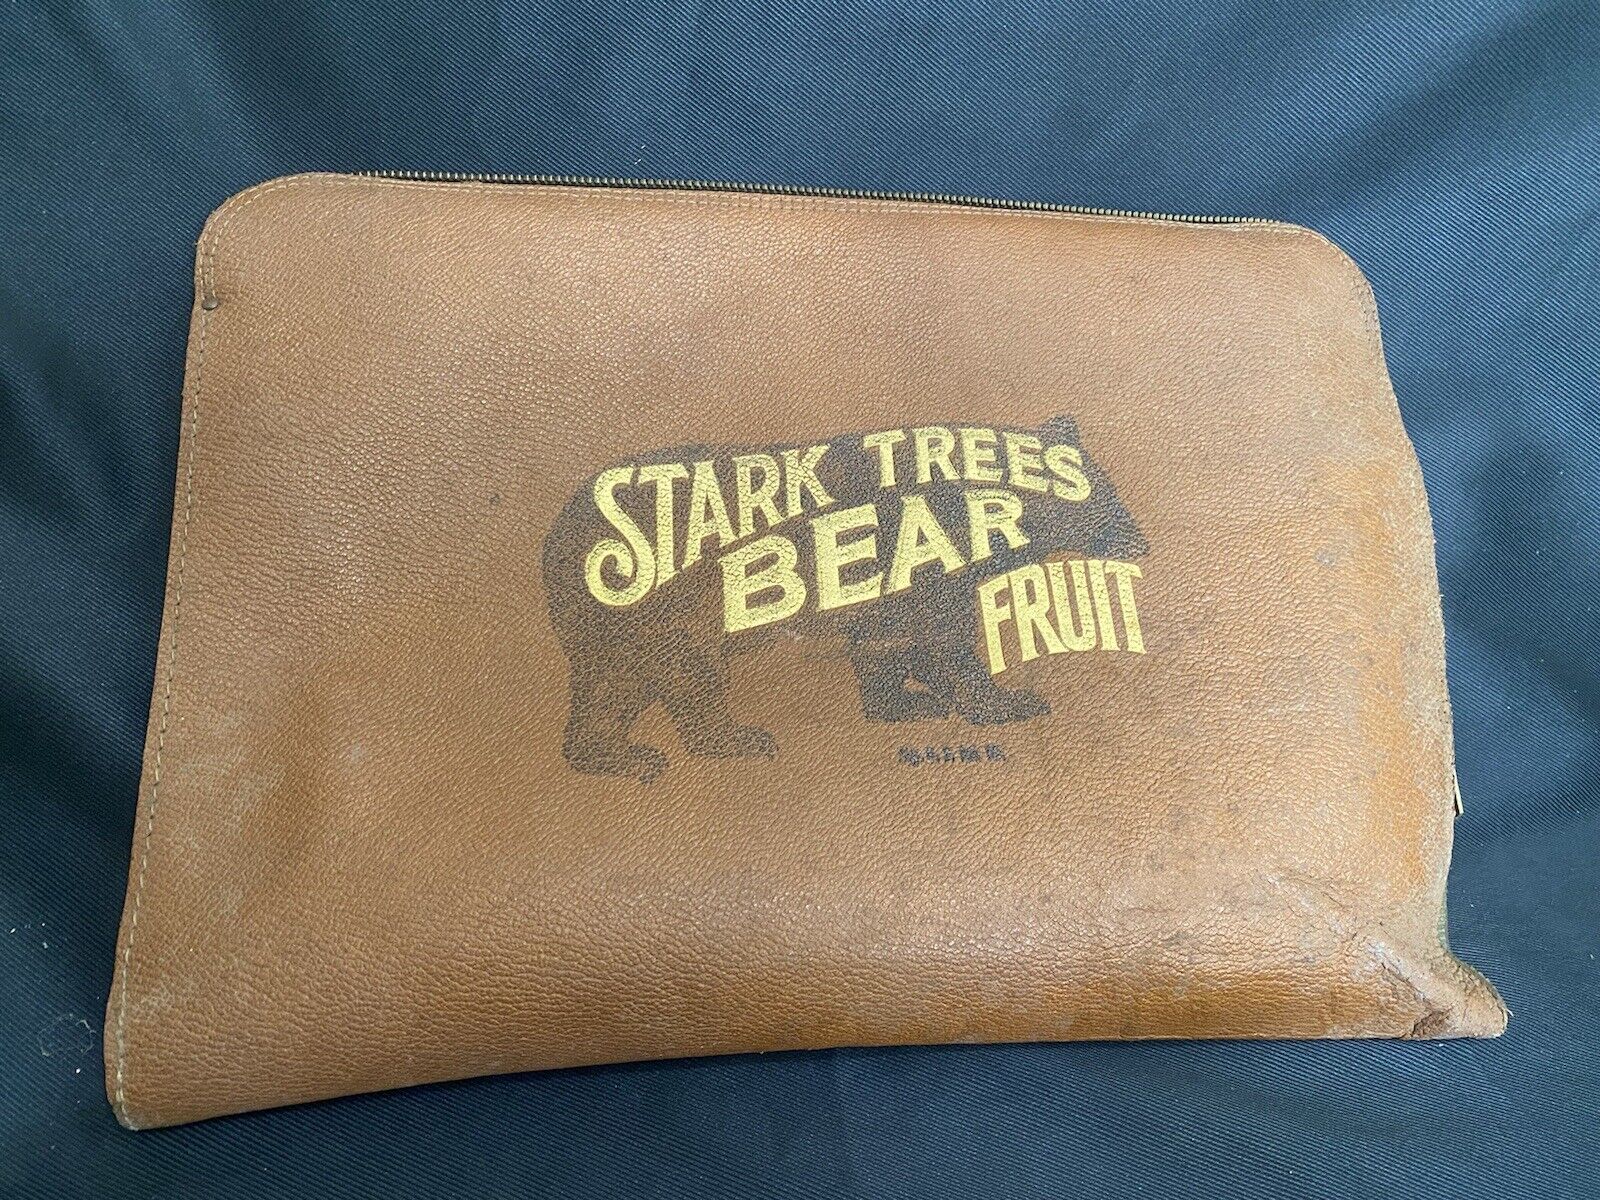 vtg stark trees bear fruit portfolio case advertising carrying case 